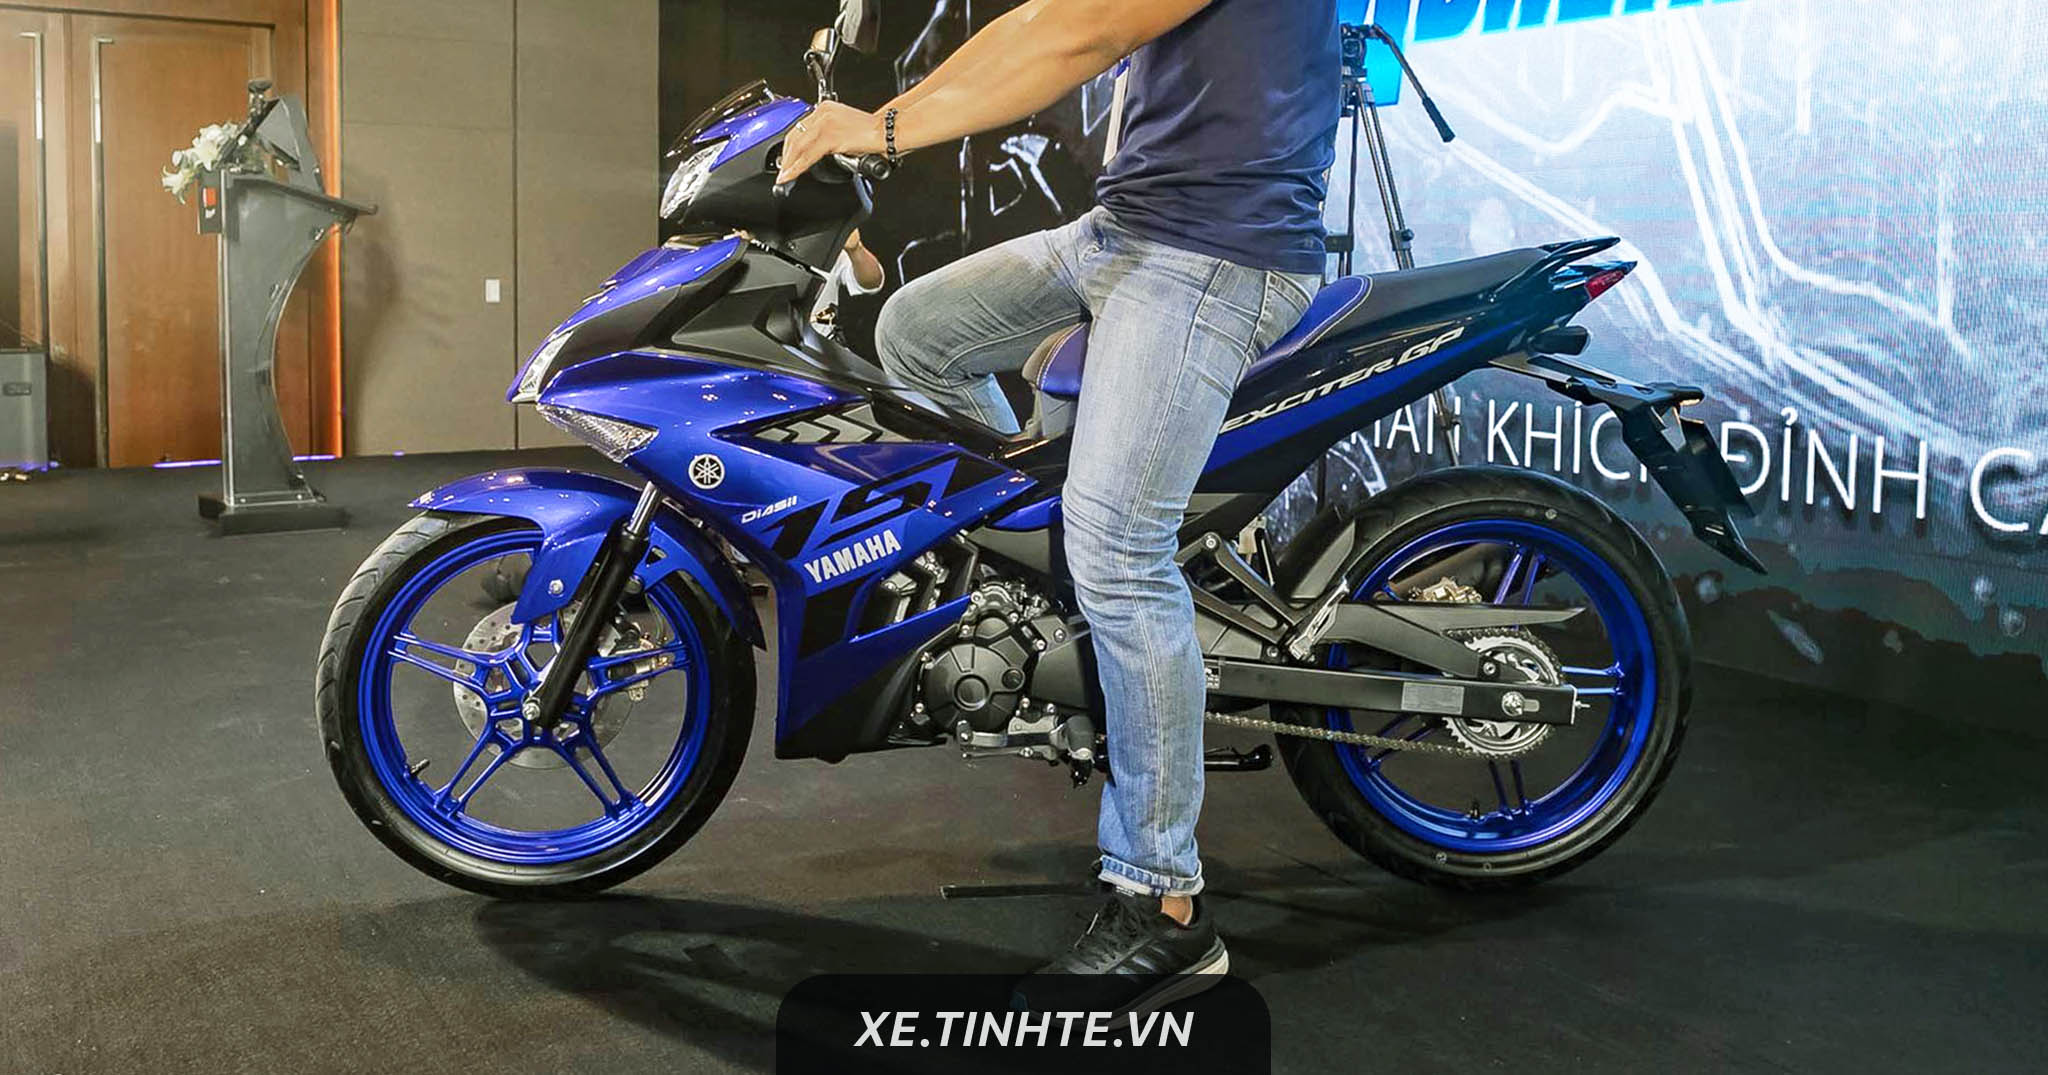 [Video] Chi tiết những thay đổi trên Yamaha Exciter 150 nâng cấp giữa đời 2018